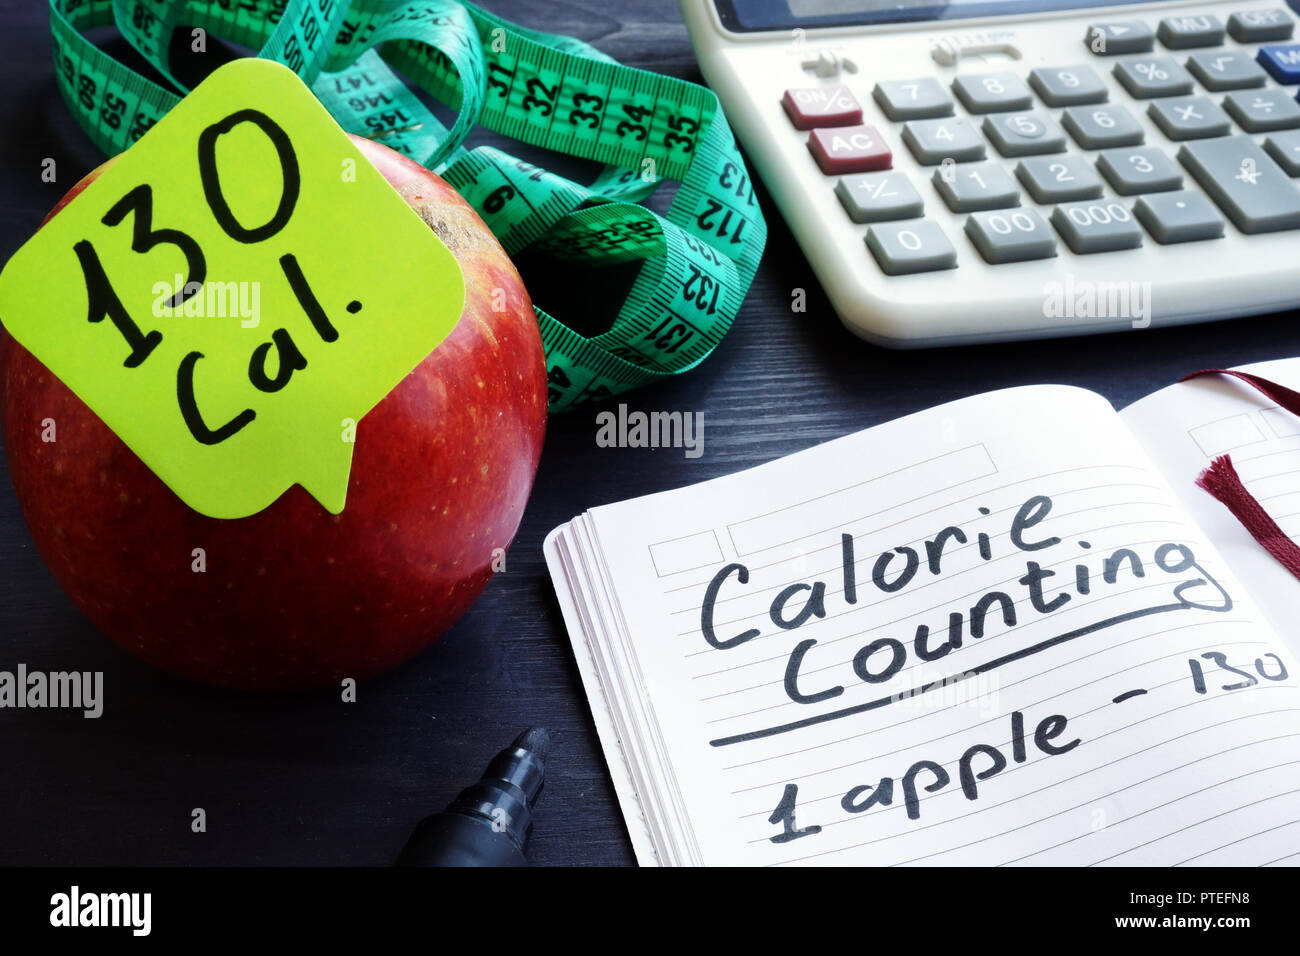 Valore calorico concetto. Apple e tra le calorie. Foto Stock